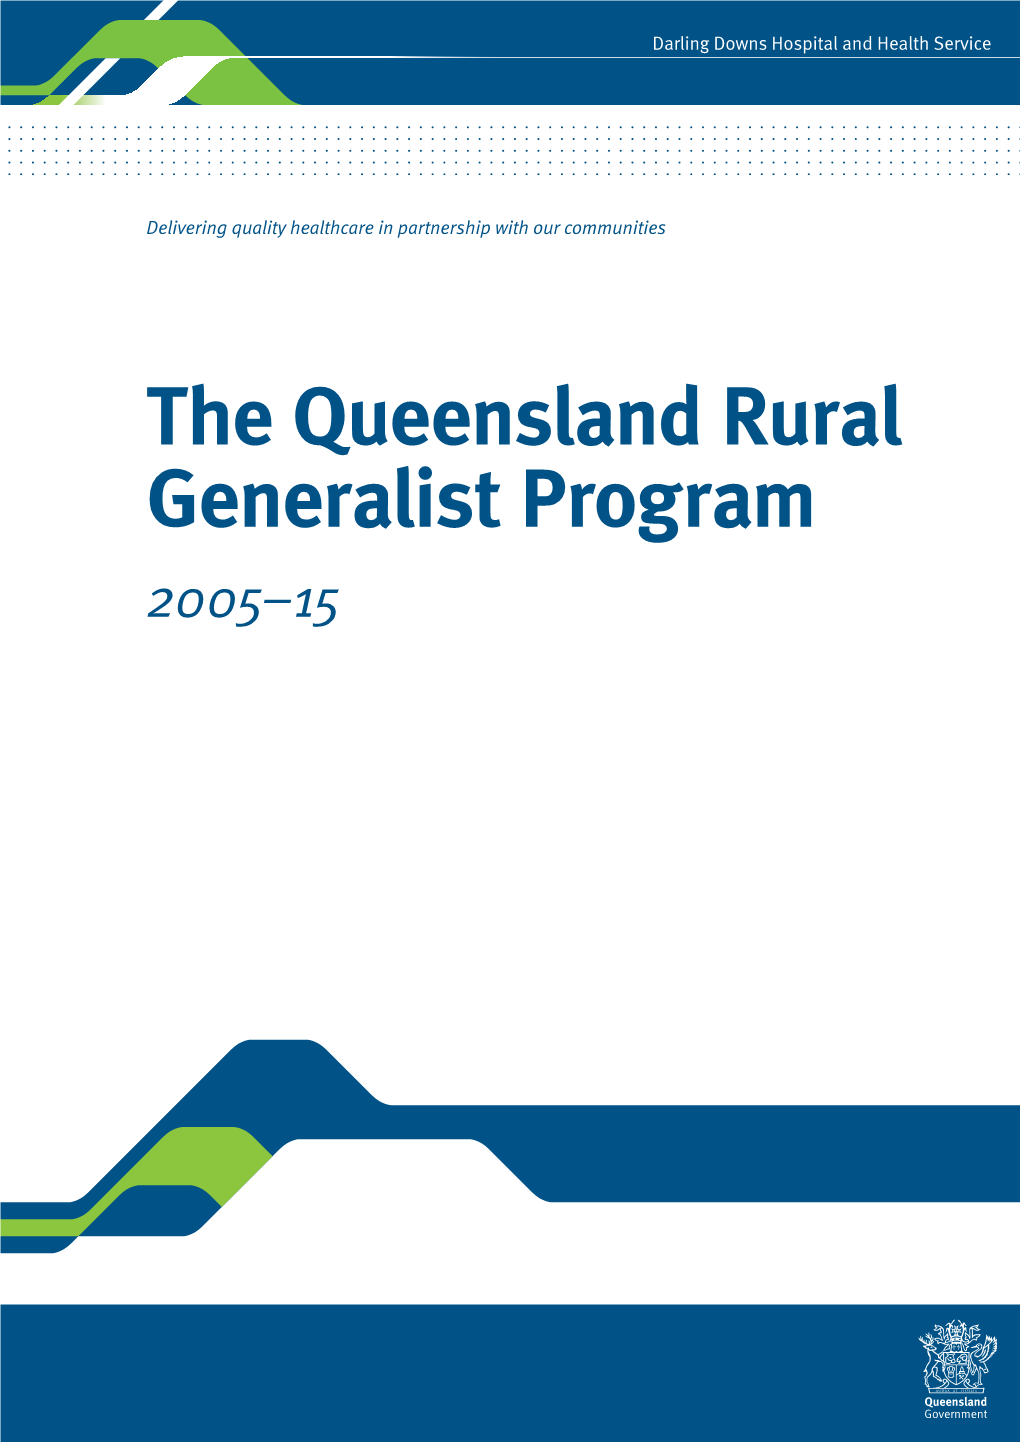 The Queensland Rural Generalist Program 2005-2015